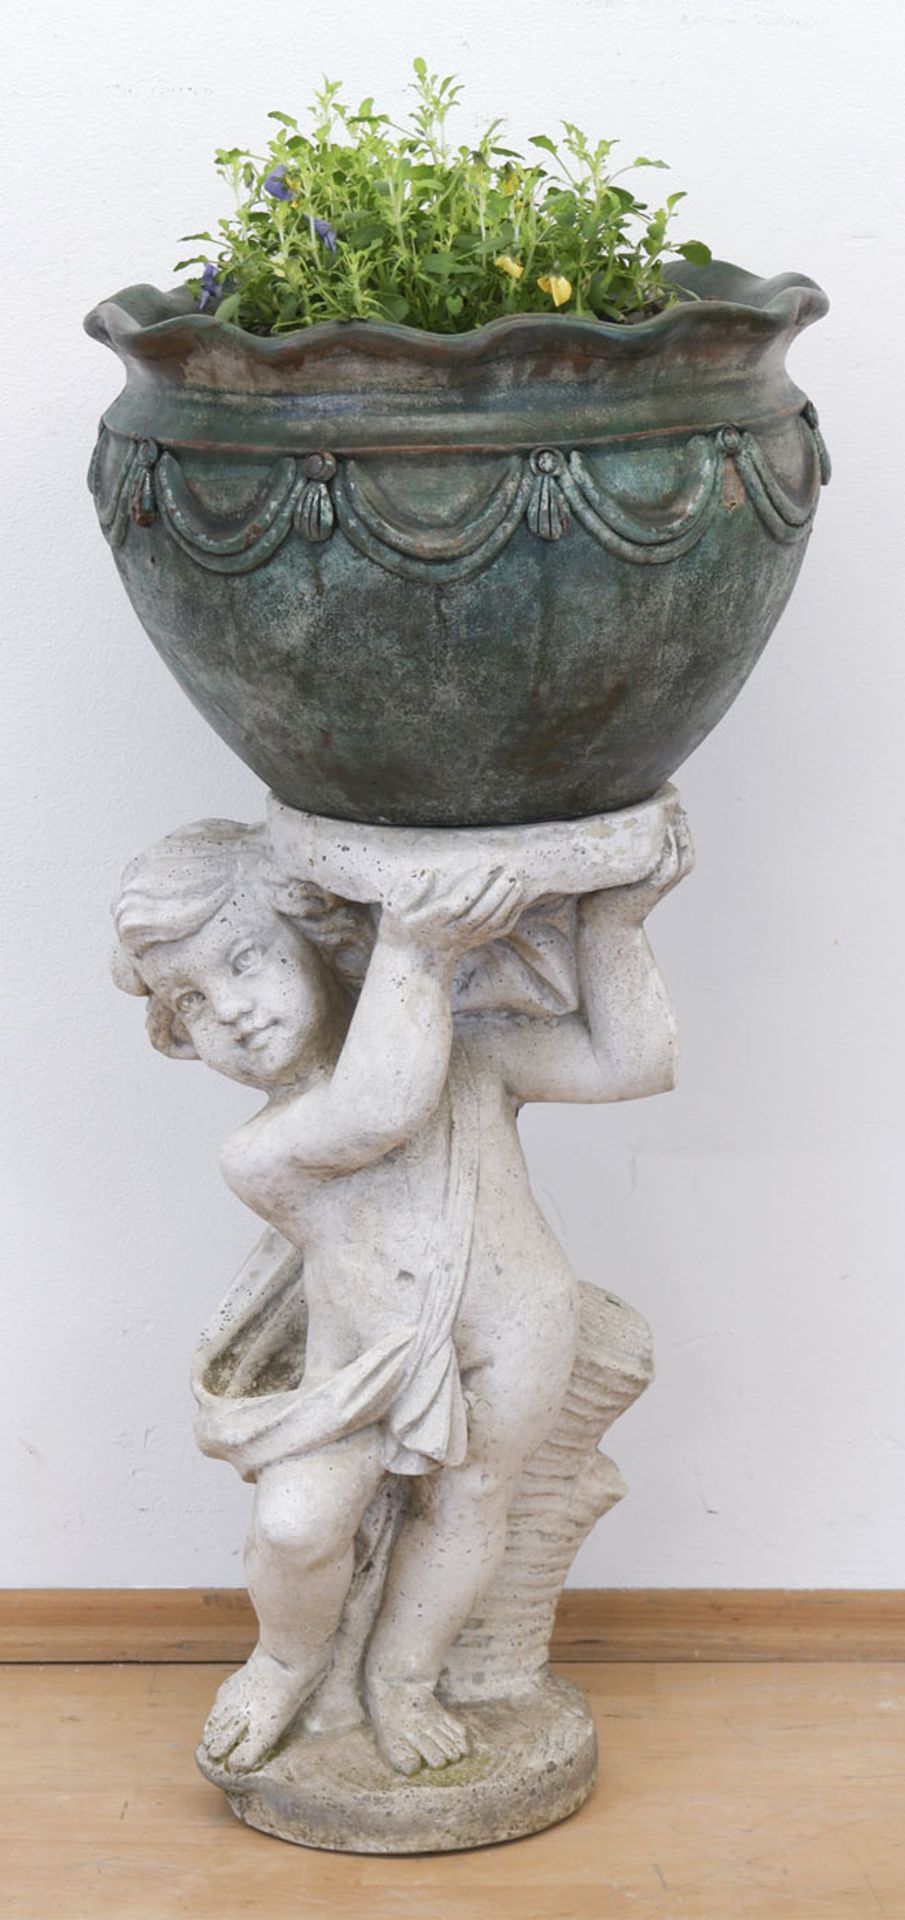 Gartenfigur "Putto mit Blumenkübel", Steinguß, Witterungsspuren, Putto H. 58 cm, Kübel H.26 cm,